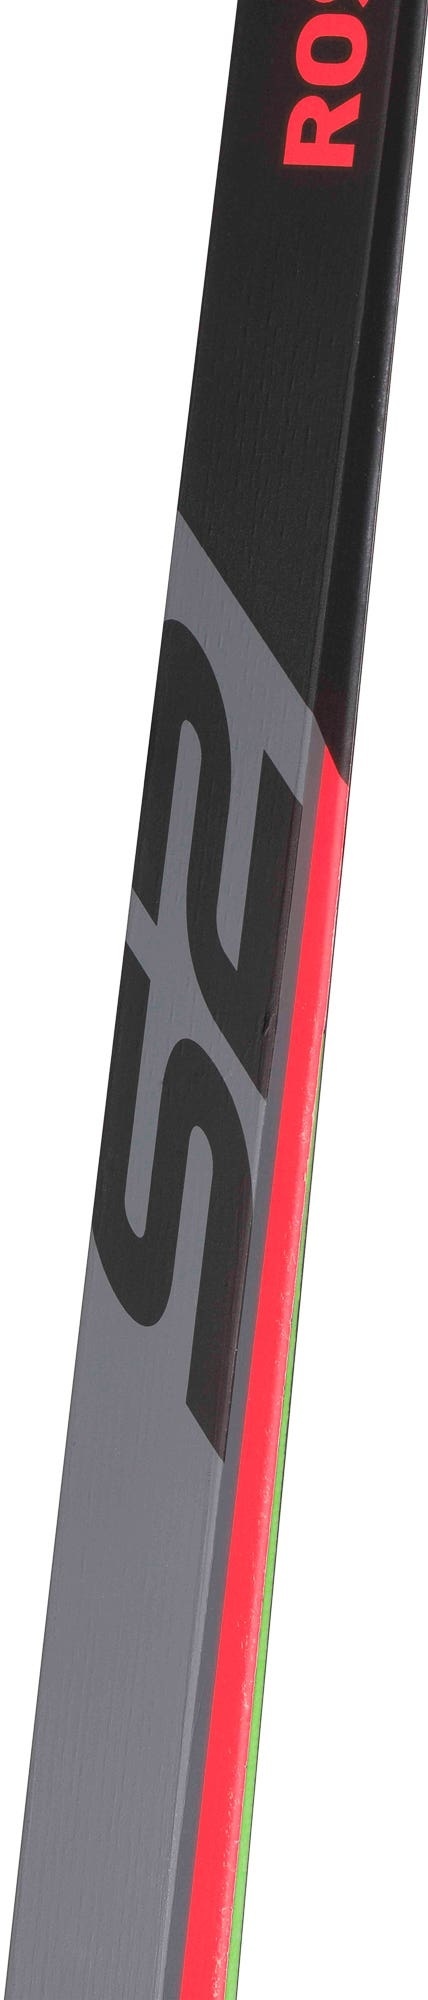 Rossignol X-IUM Skate Premium S2 Cross Country Ski 23/24